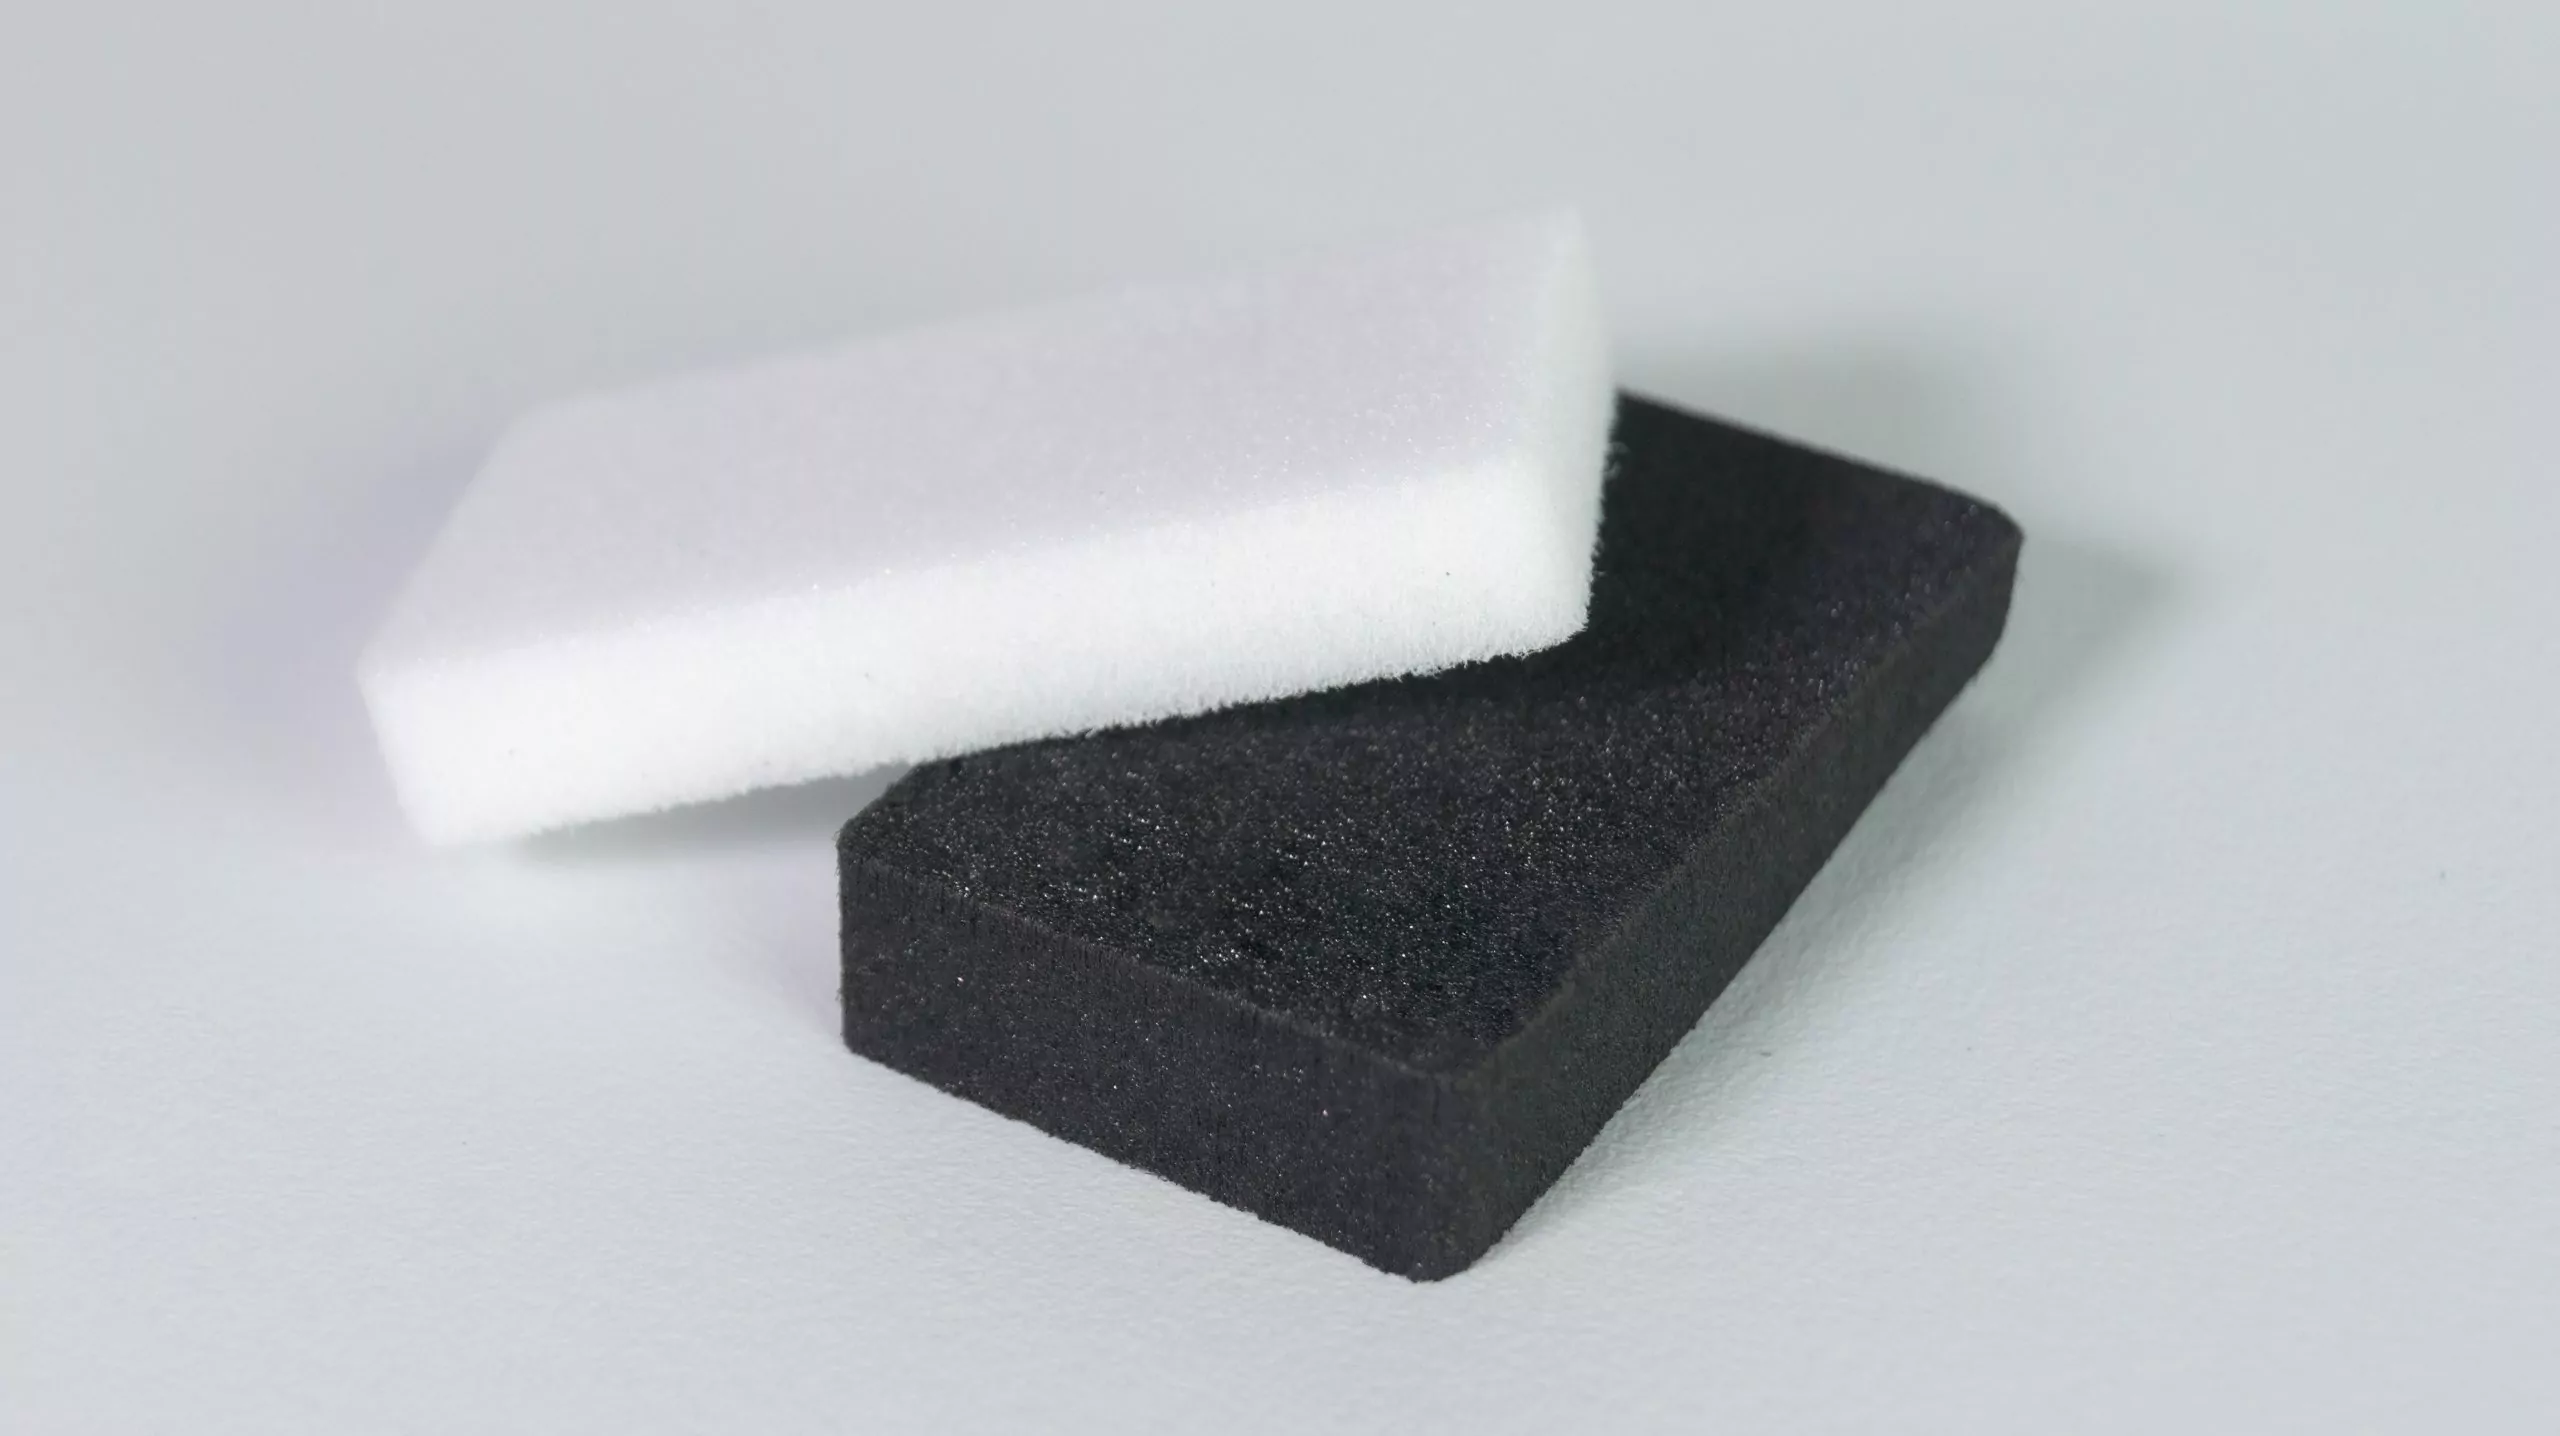 AZOTE® Zotefoams - Transit Packaging Foam Experts - Worldwide Foam